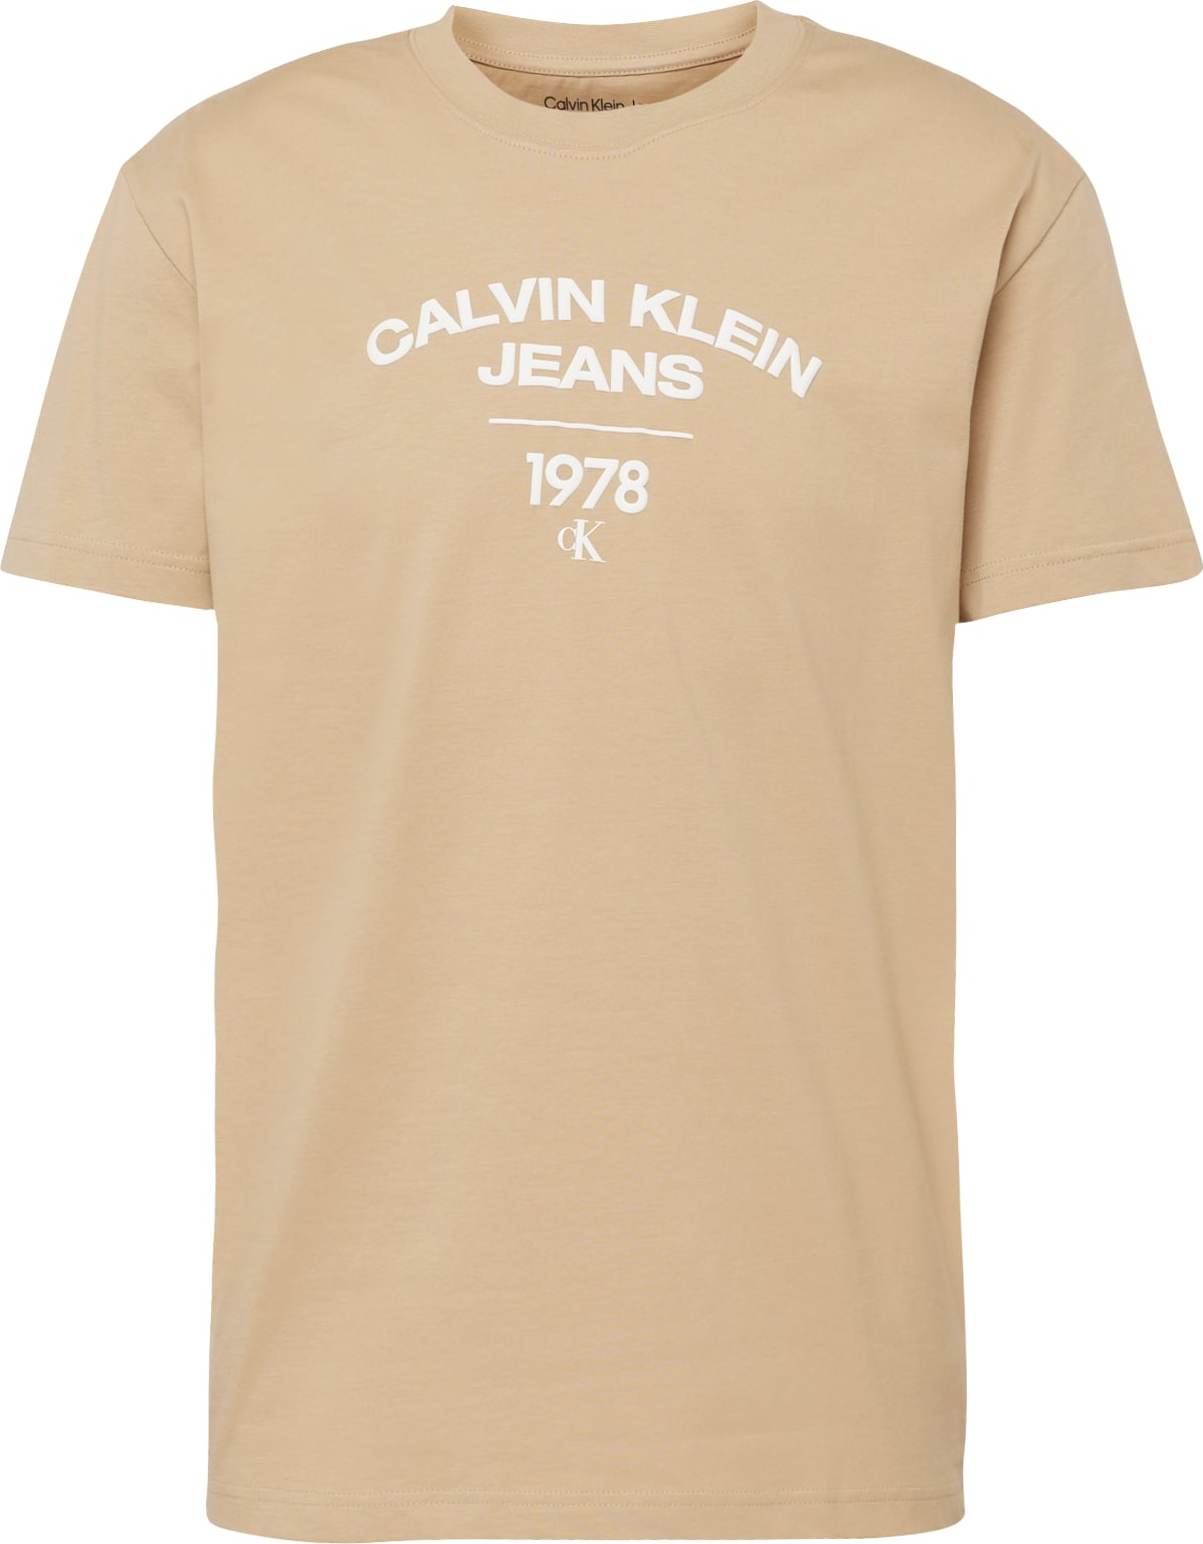 Tričko Calvin Klein písková / bílá